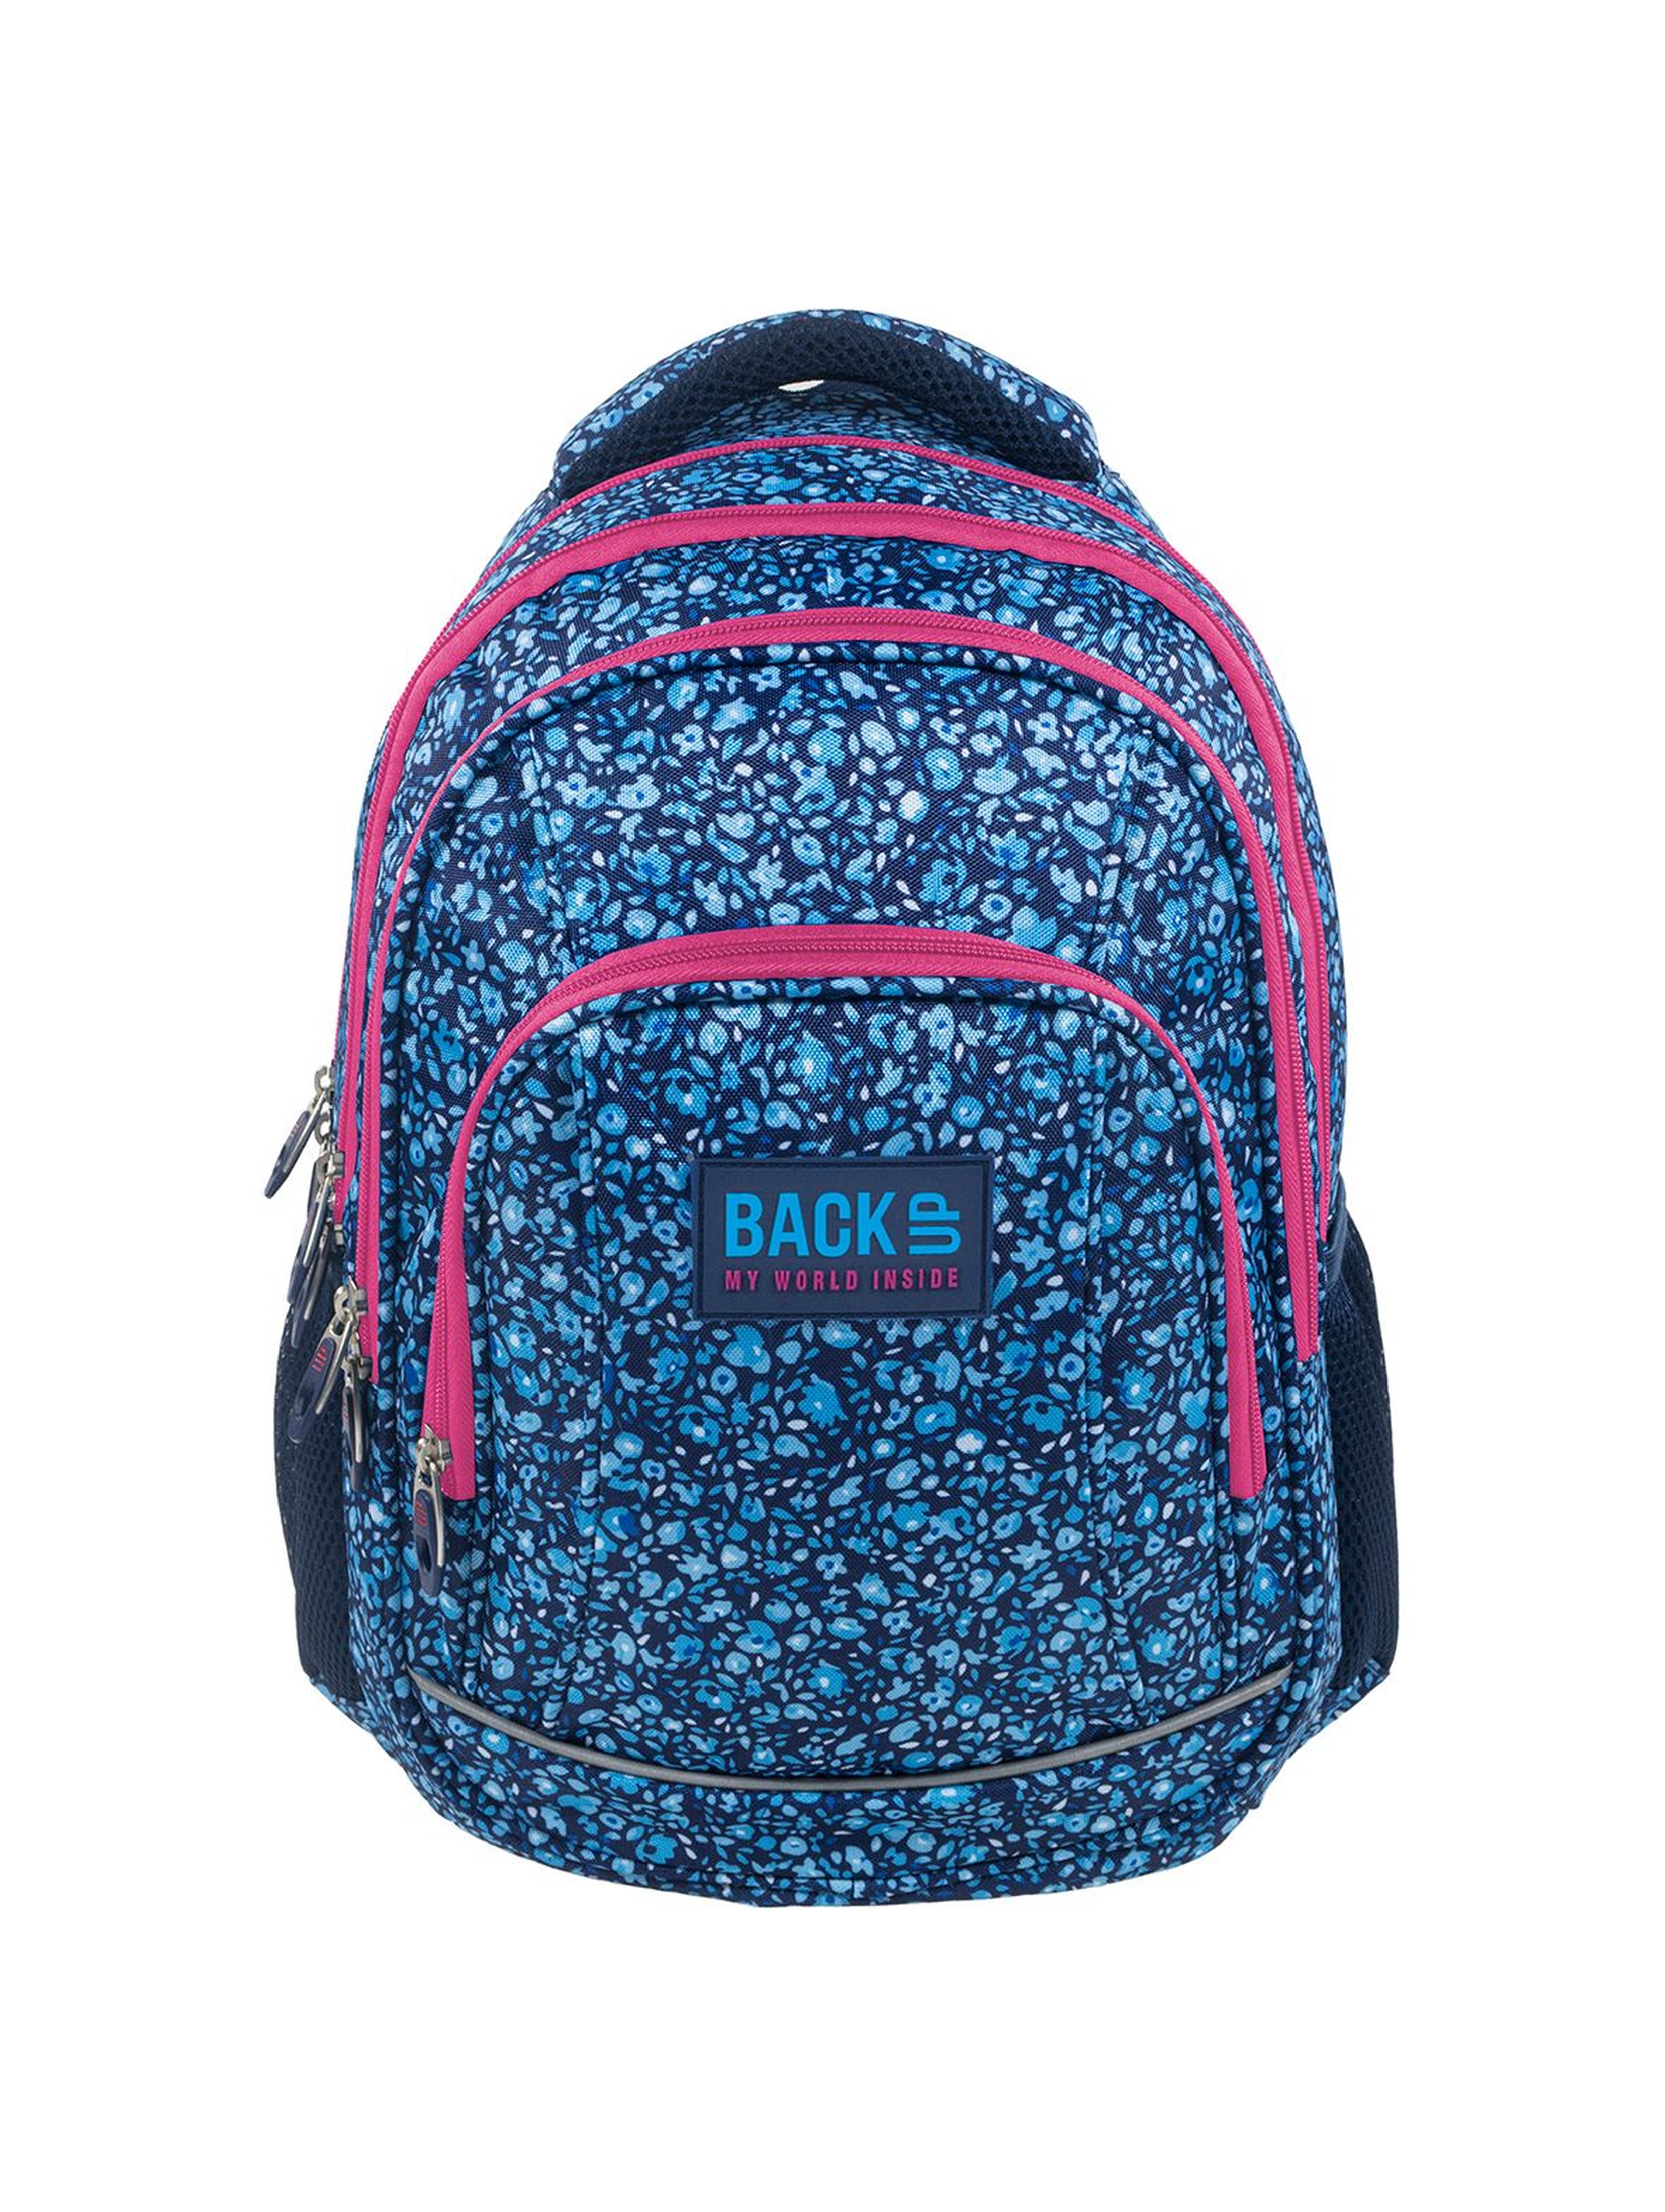 Plecak szkolny BackUP z odblaskami + SŁUCHAWKI - niebieski w kwiatuszki